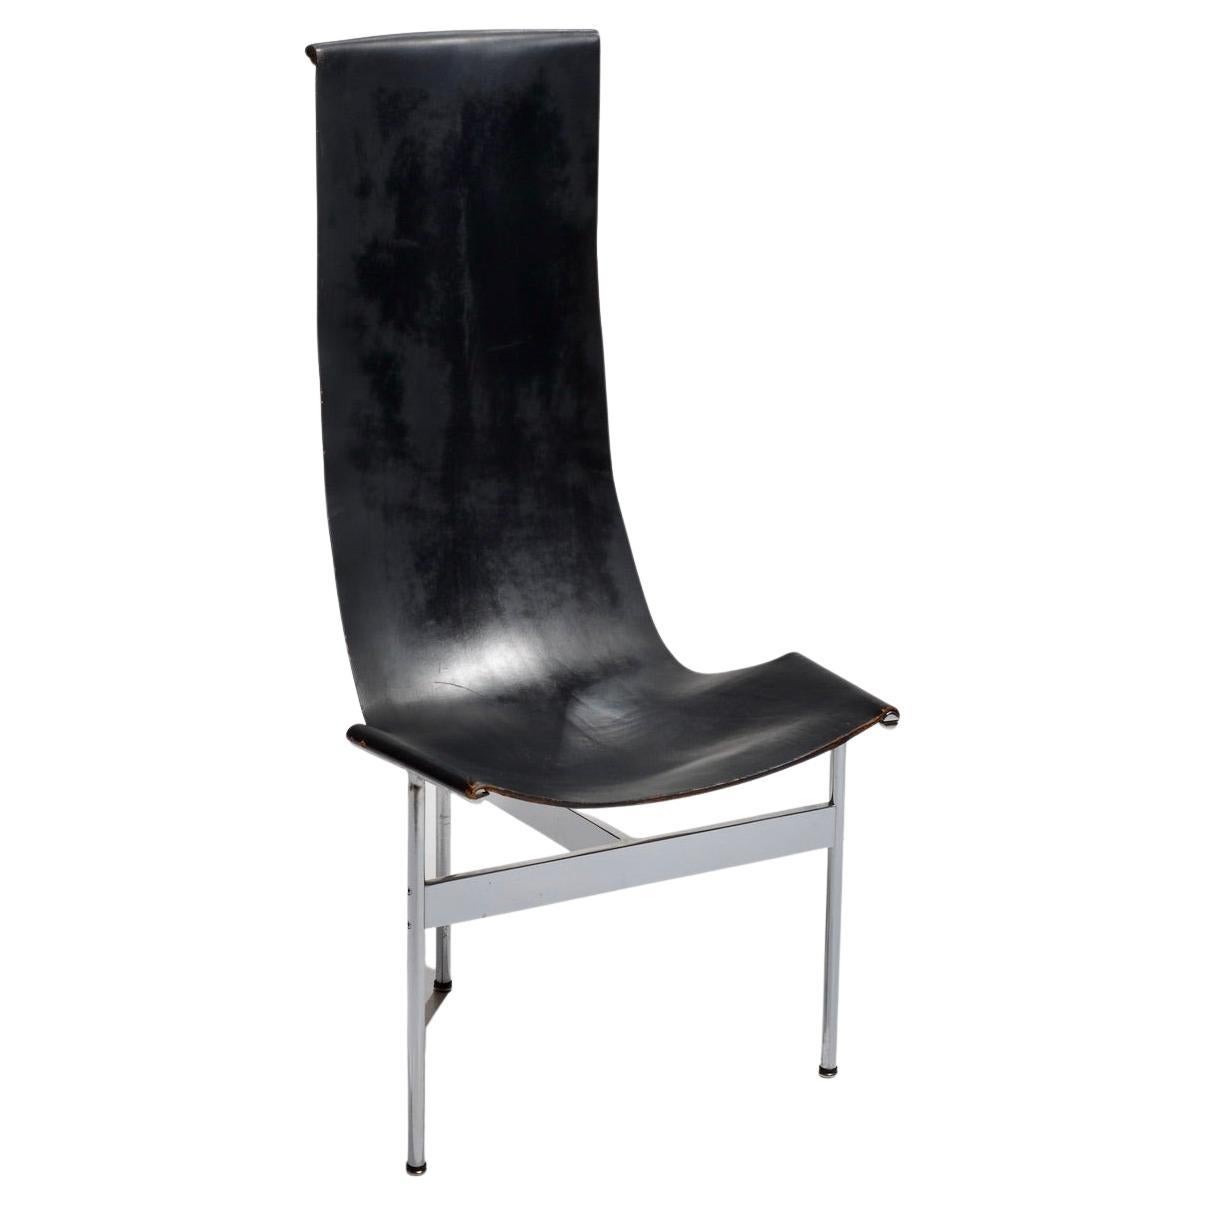 William Katavolos entwarf 1952 in Zusammenarbeit mit Douglas Kelley und Ross Littell den ikonischen Sling-Back T Chair als Teil der skulpturalen New Furniture Serie von Laverne International. Der T Chair befindet sich in den ständigen Sammlungen des